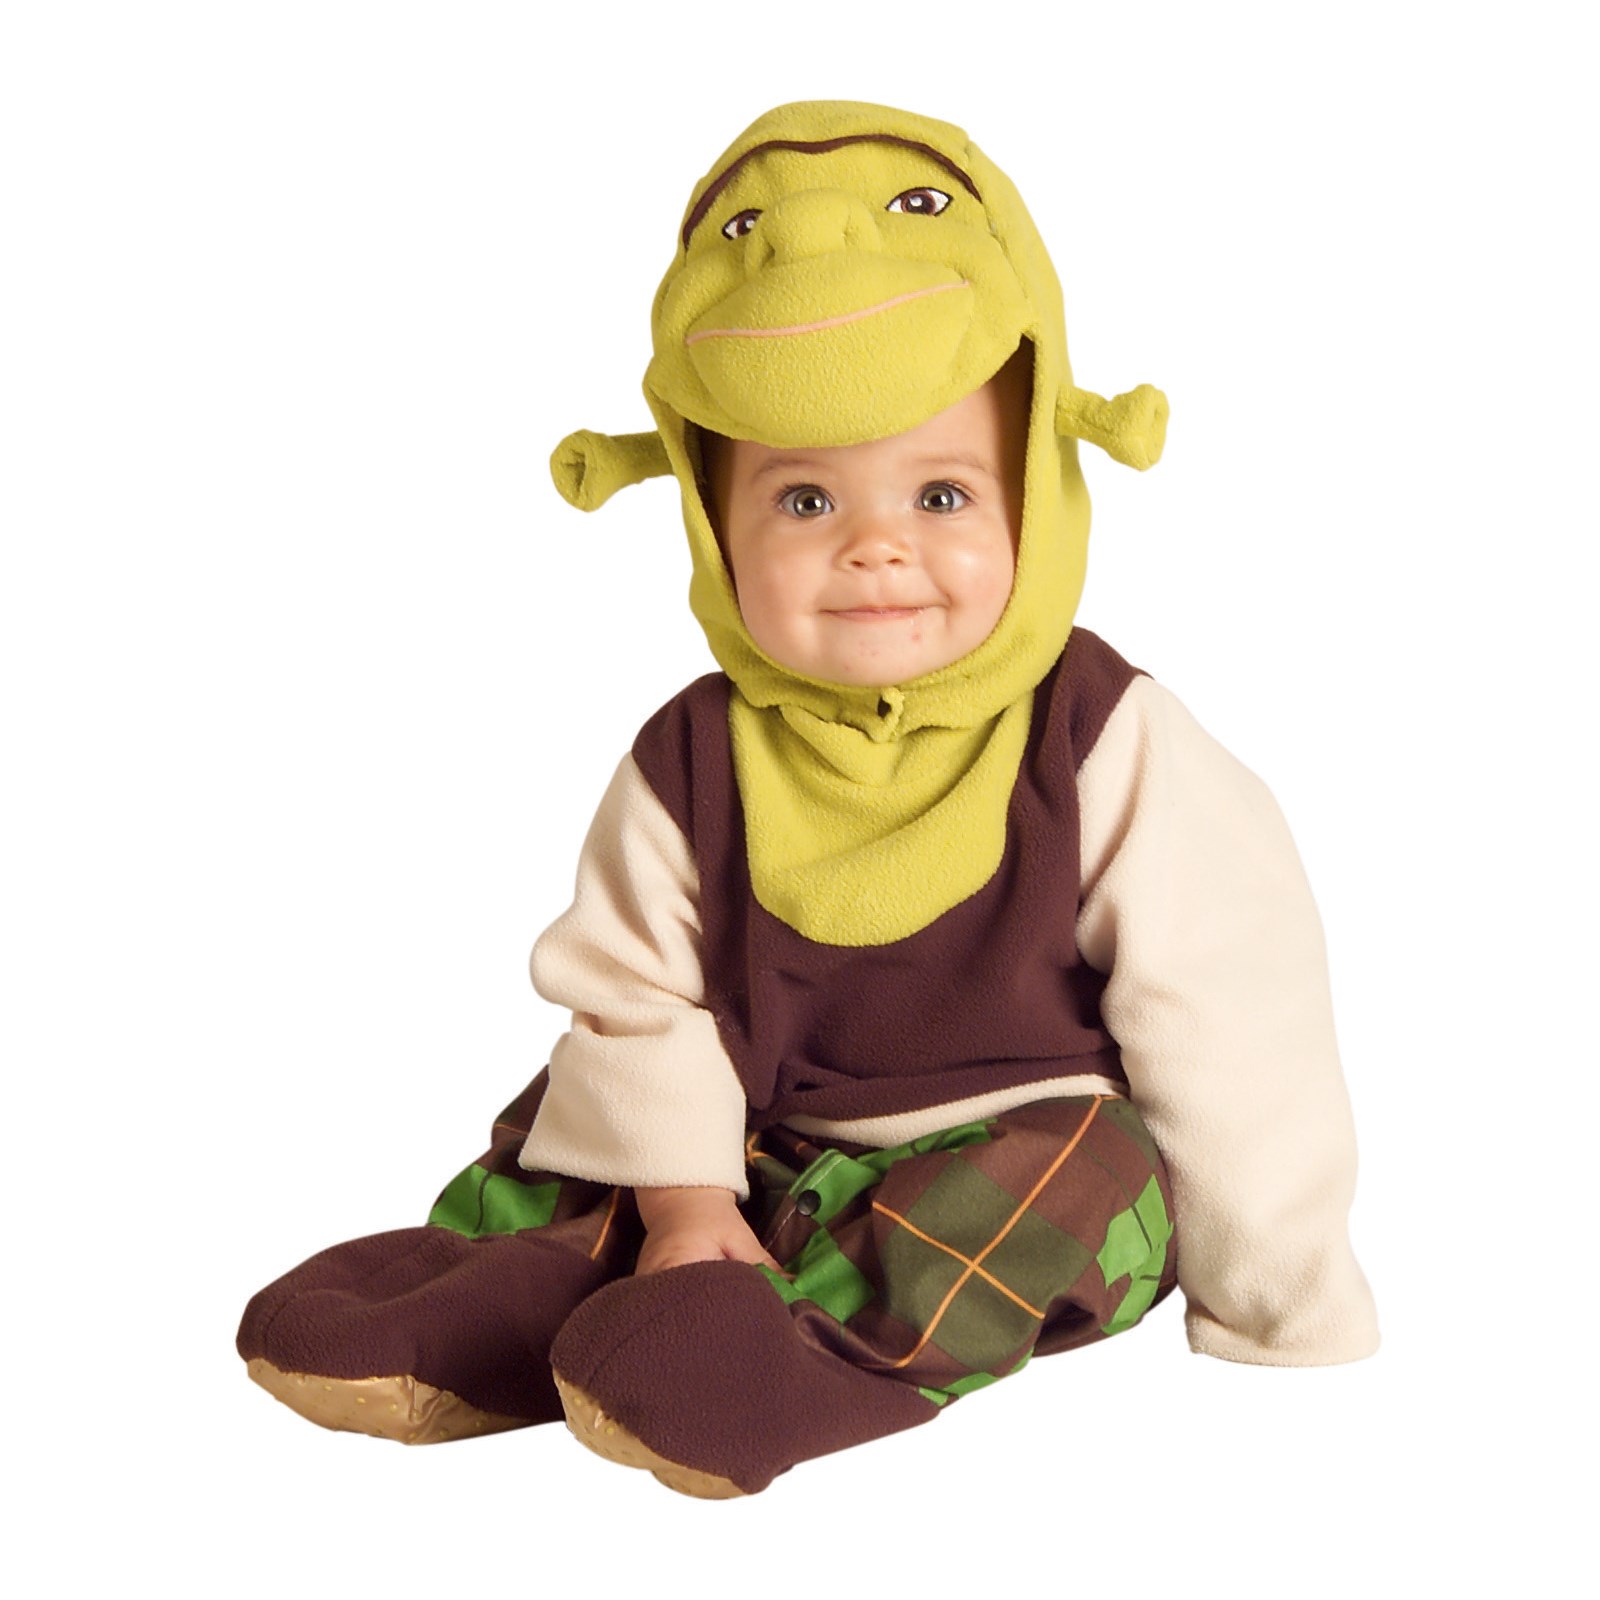 Baby Shrek Romper Infant / Toddler Costume